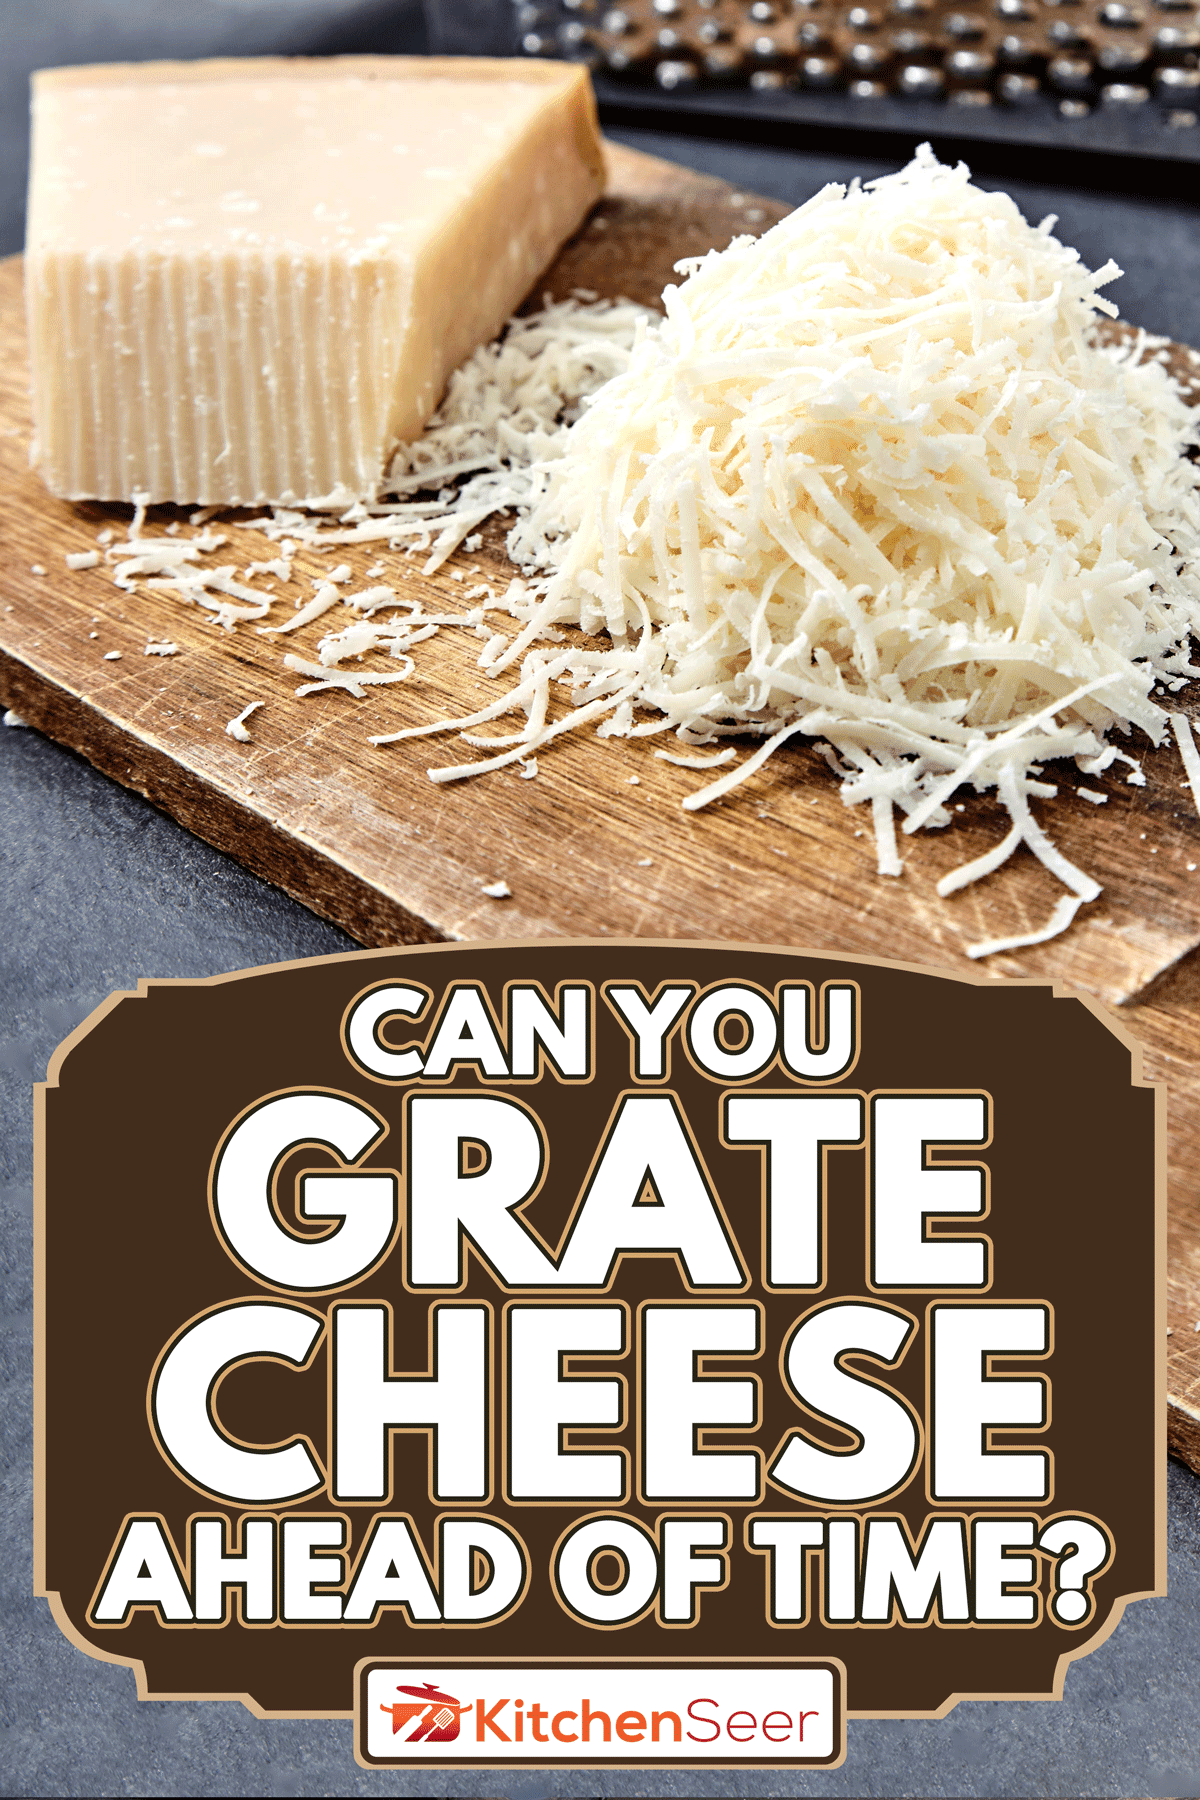 将帕尔玛干酪或帕尔玛干酪切碎放在木板上，你能提前磨碎奶酪吗?